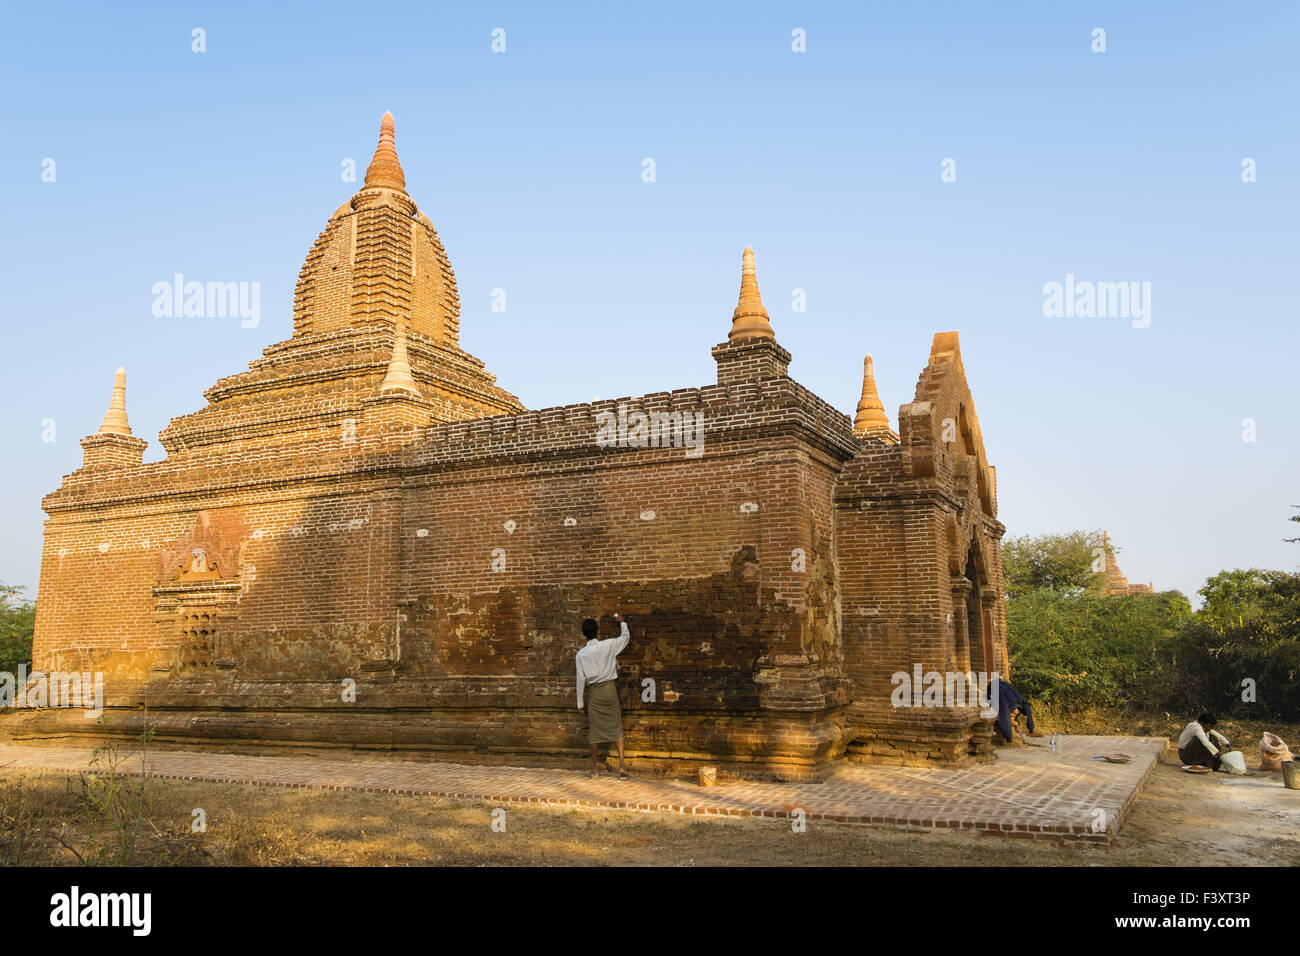 Lavori di restauro, Bagan, Myanmar, Asia Foto Stock